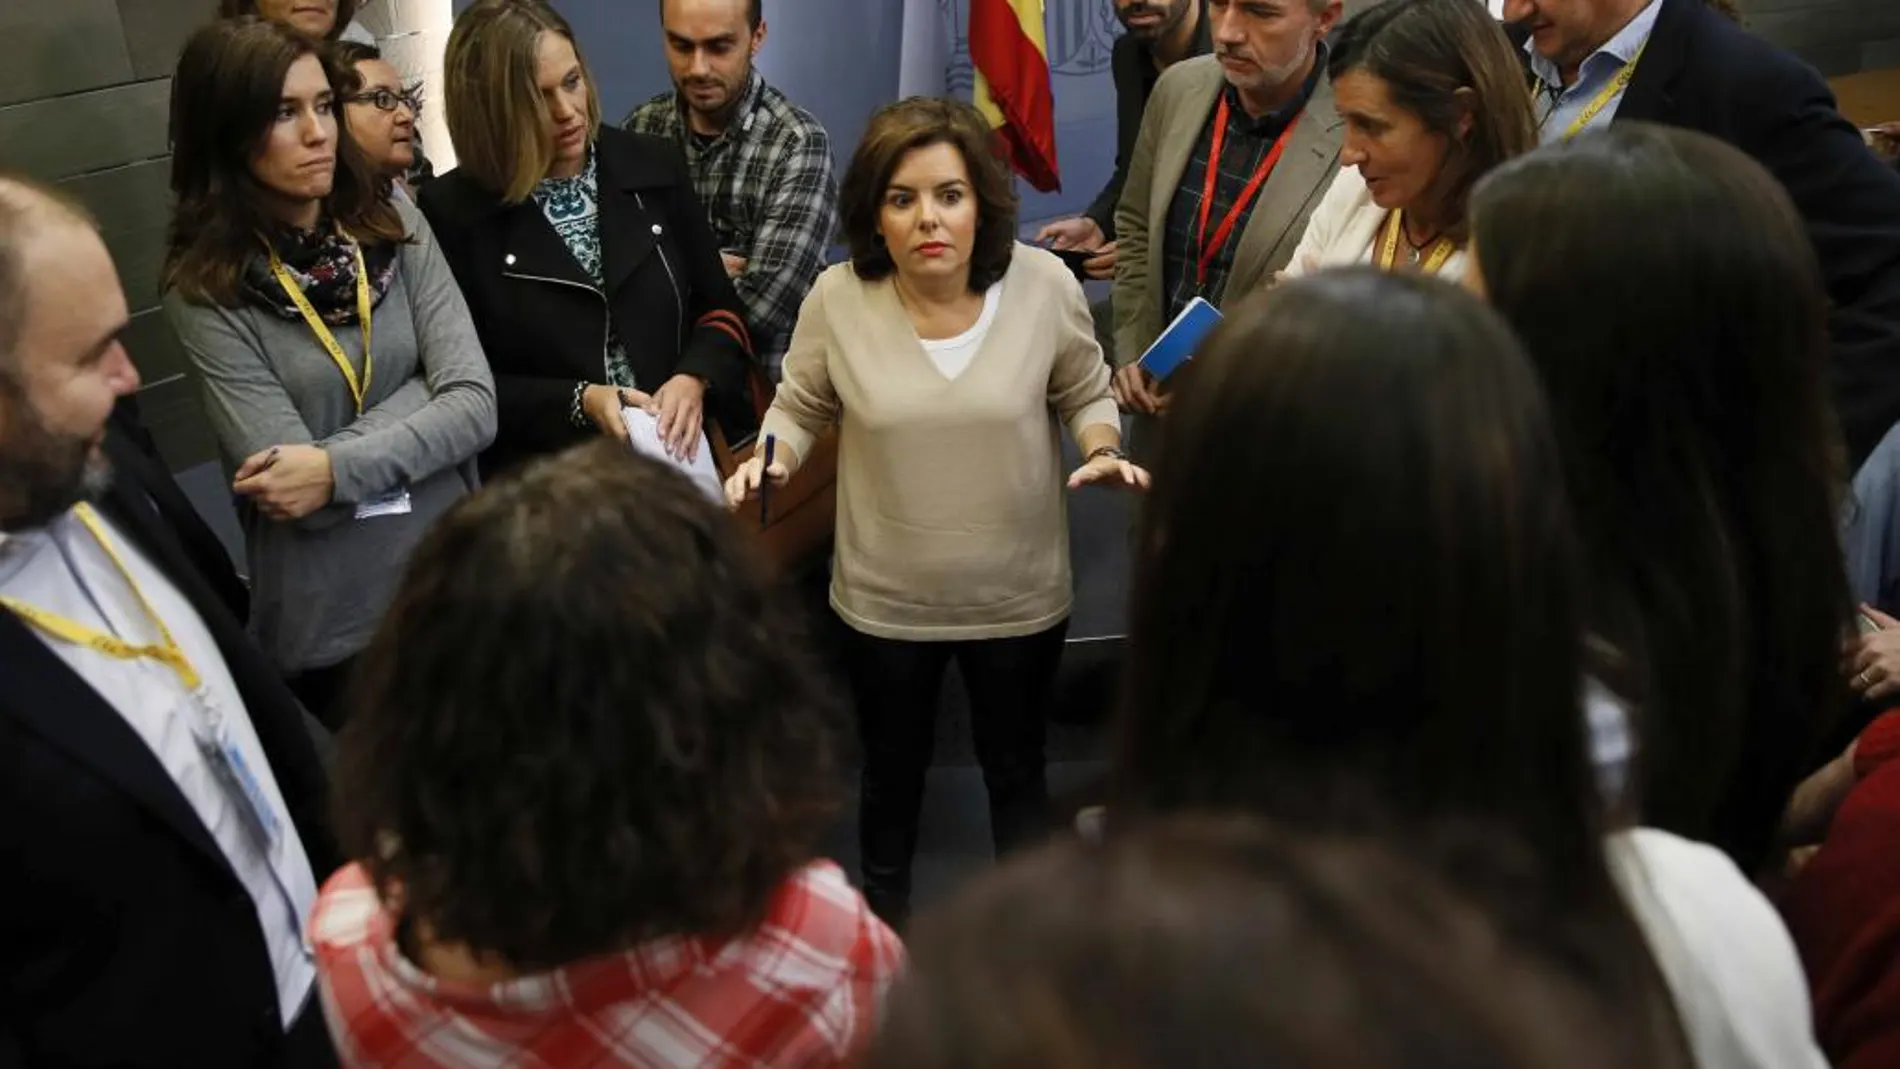 La vicepresidenta del Gobierno en funciones, Soraya Sáenz de Santamaría, conversa con los periodistas tras la rueda de prensa que ofreció hoy en el Palacio de La Moncloa